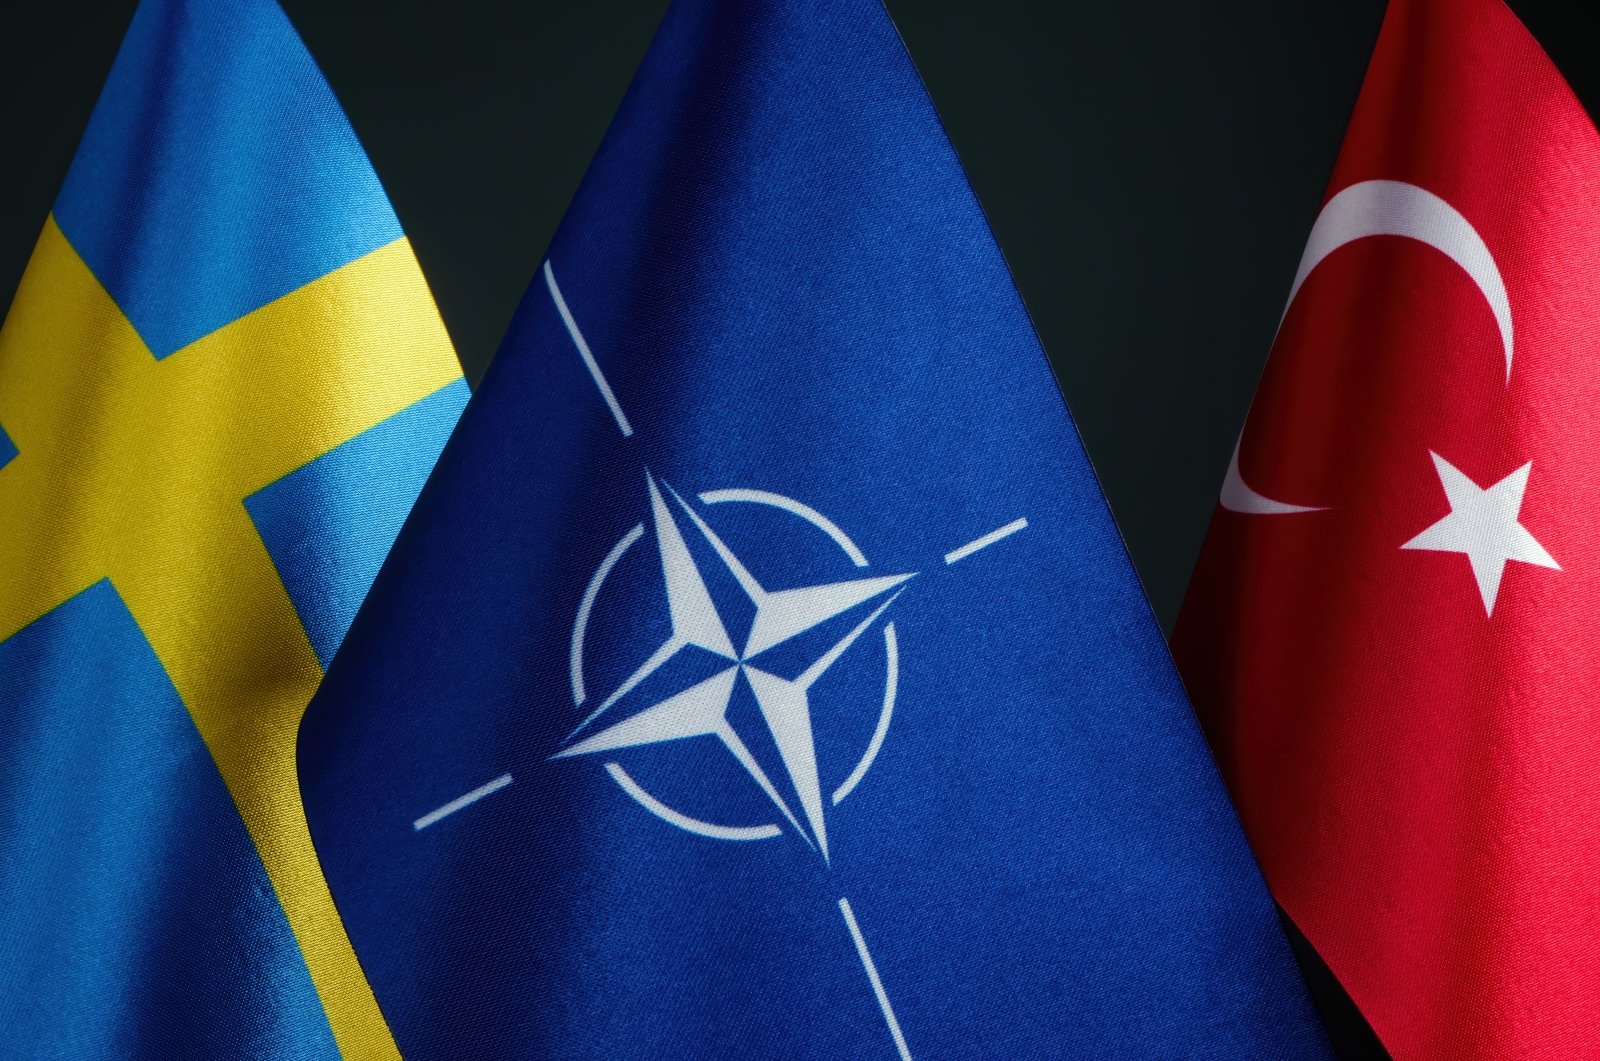 Apakah Swedia ingin bergabung dengan NATO?